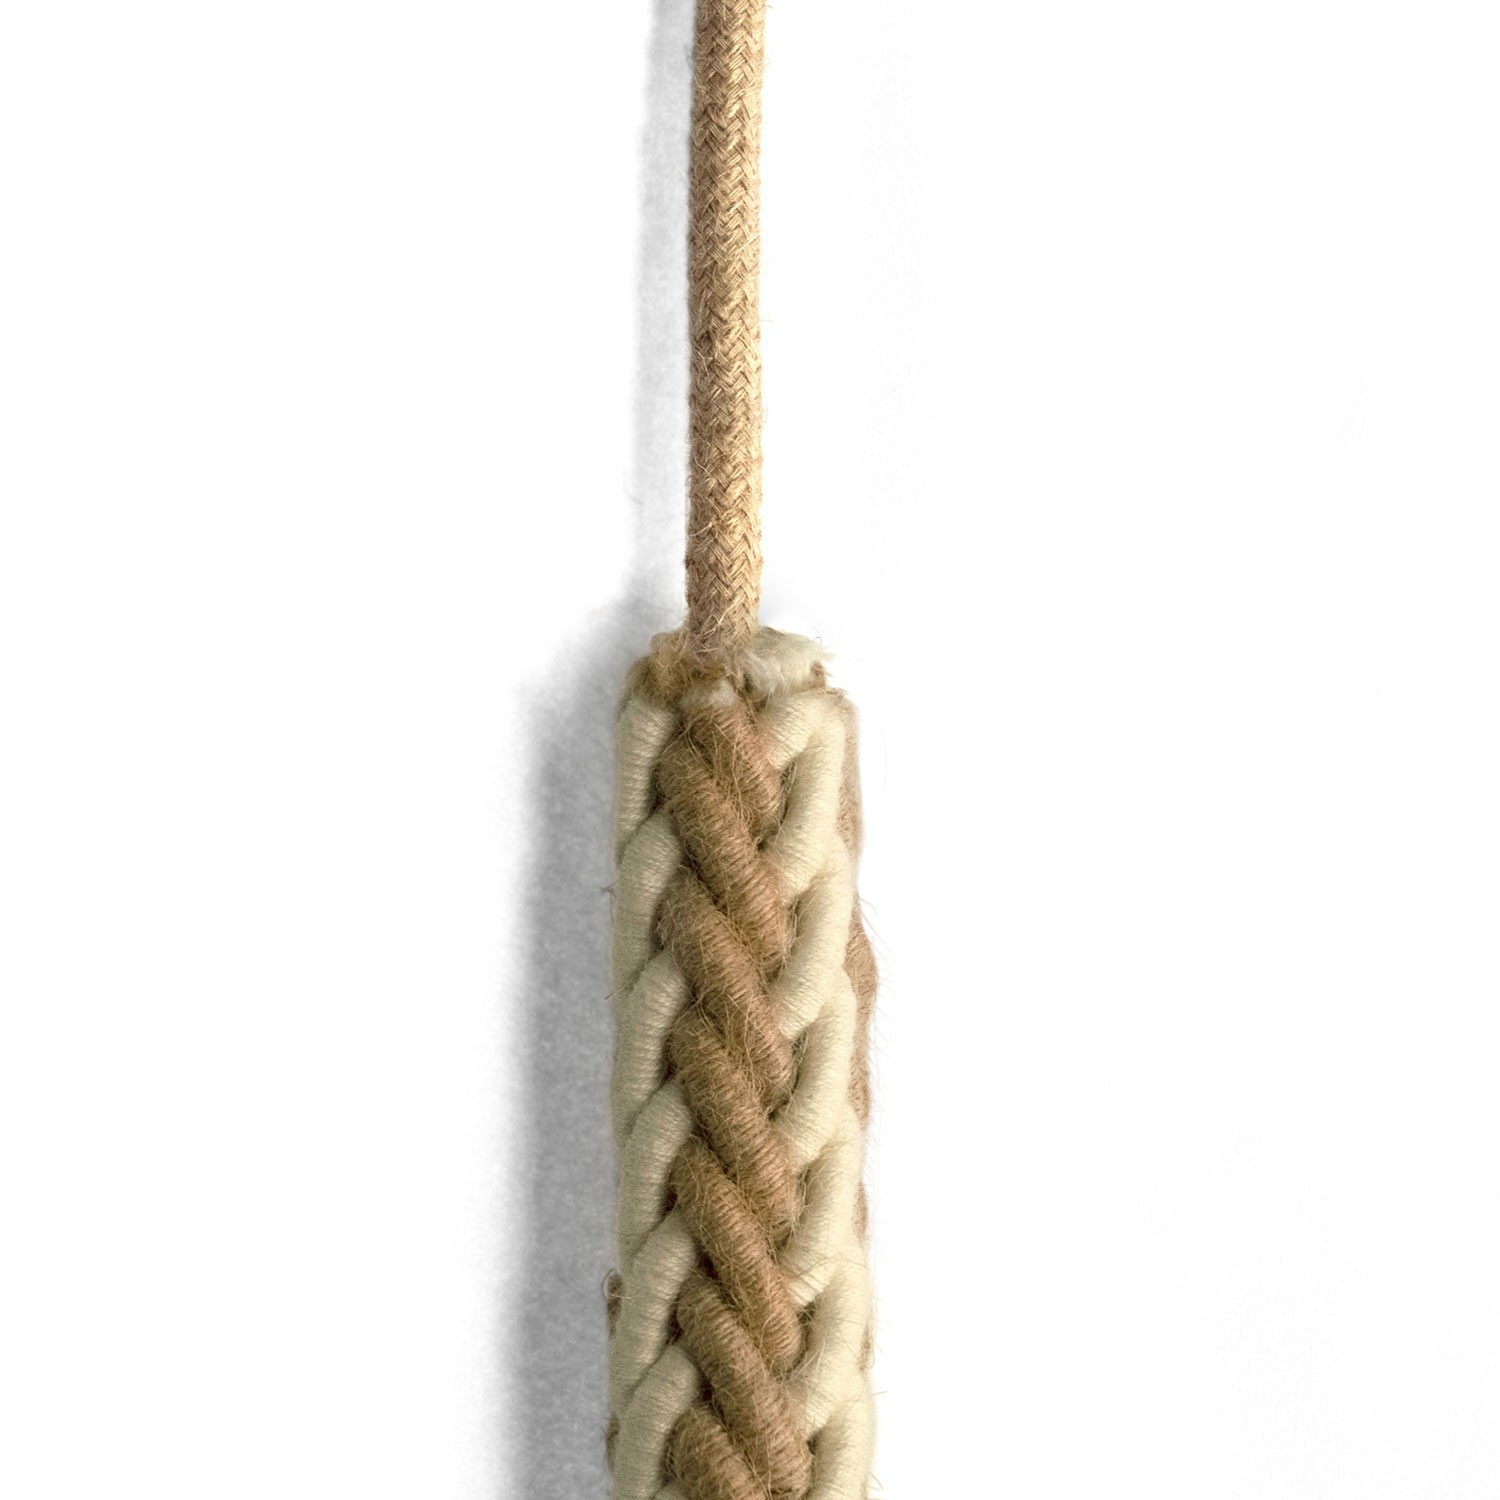 Cordón 2XL trenzado en Yute y Algodón blanco crudo, cable eléctrico 2x0,75. Diámetro de 24 mm